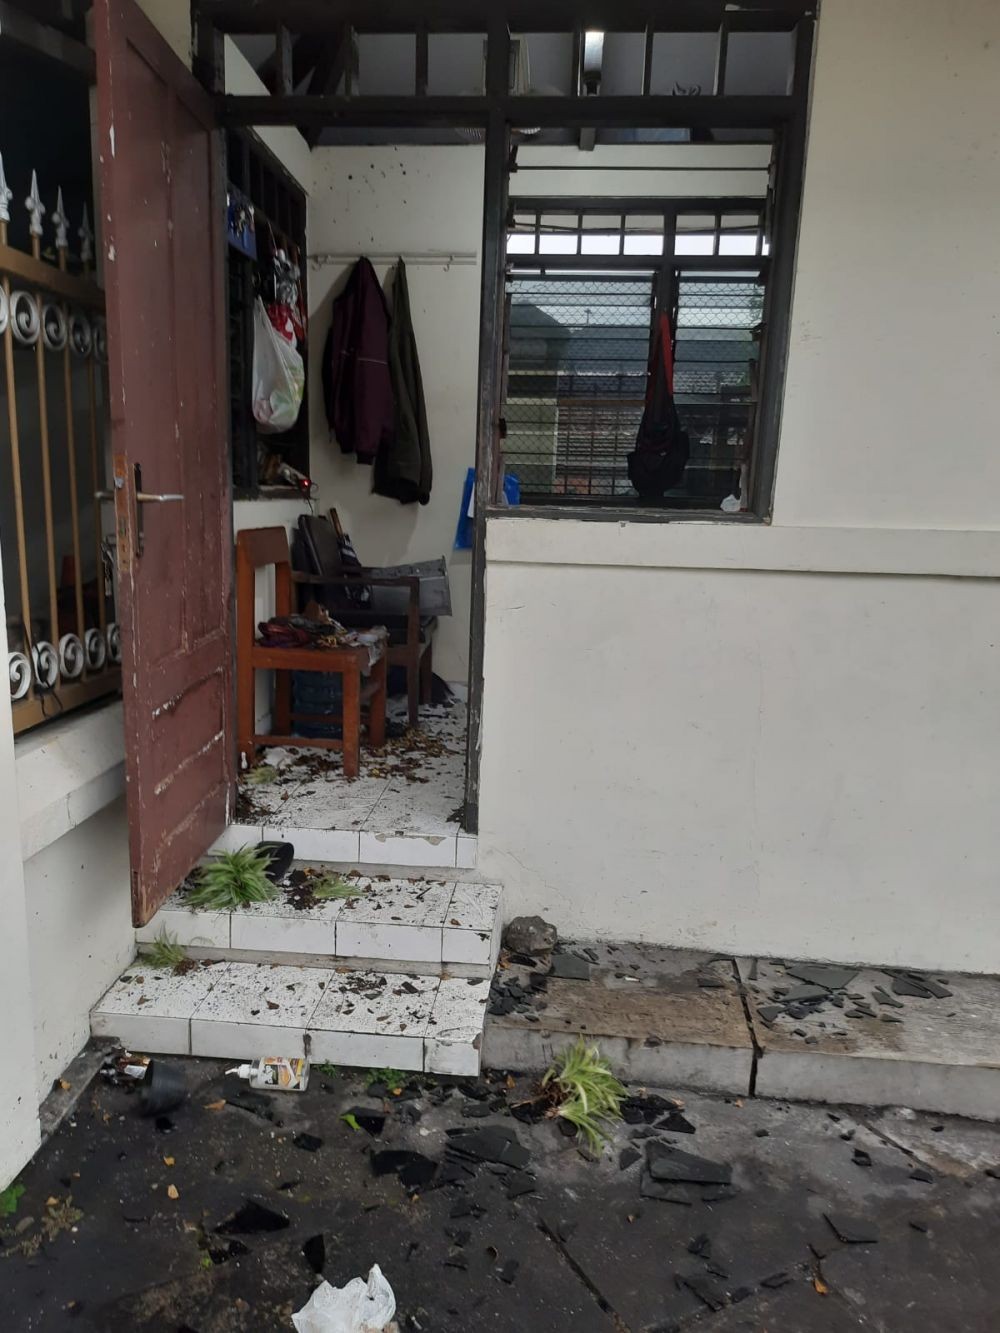 Polda DIY Tangkap 4 Orang Terkait Penyerangan SMA Bosa Yogyakarta 